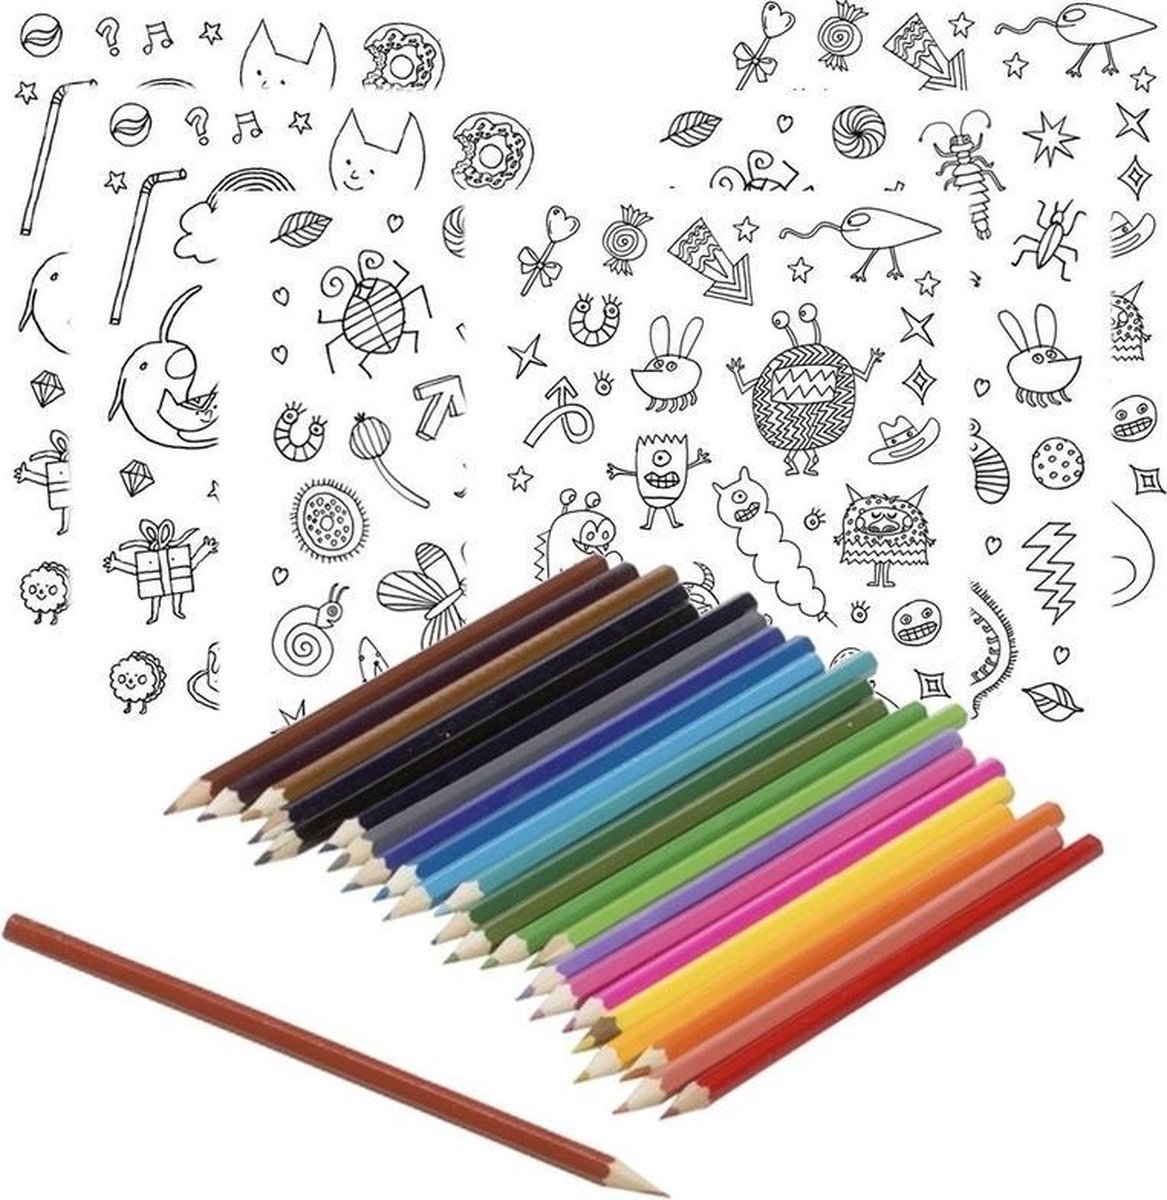 6x Knutsel stickervellen om te kleuren incl. potloden - stickertjes - Hobbymateriaal/knutselmateriaal stickers inkleuren